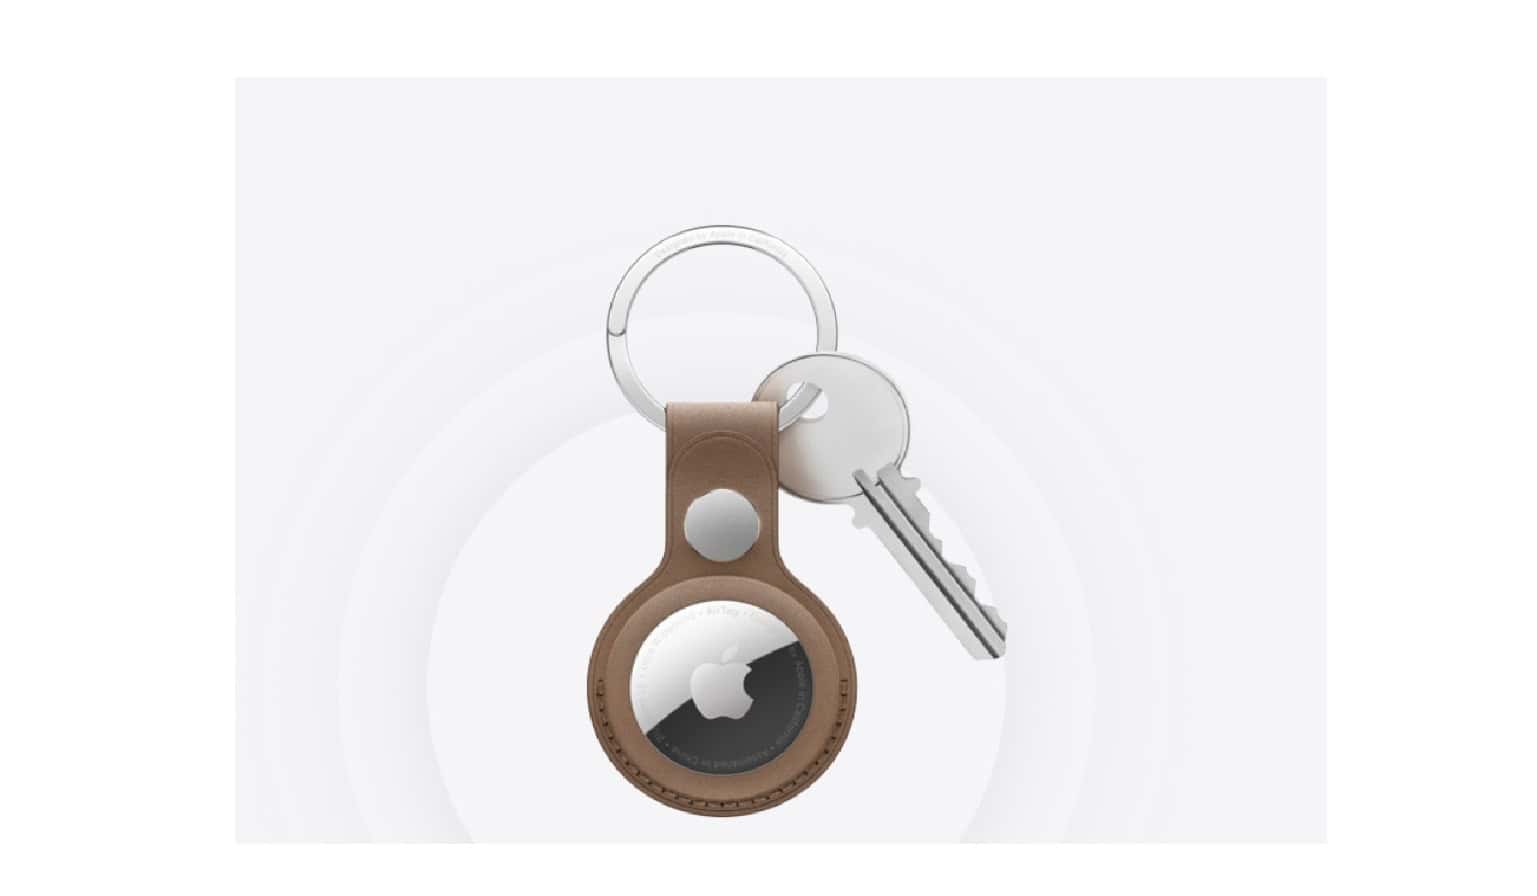 Air Tag se puede usar en llaves, maletas o en cualquier objeto que desees saber dónde está.